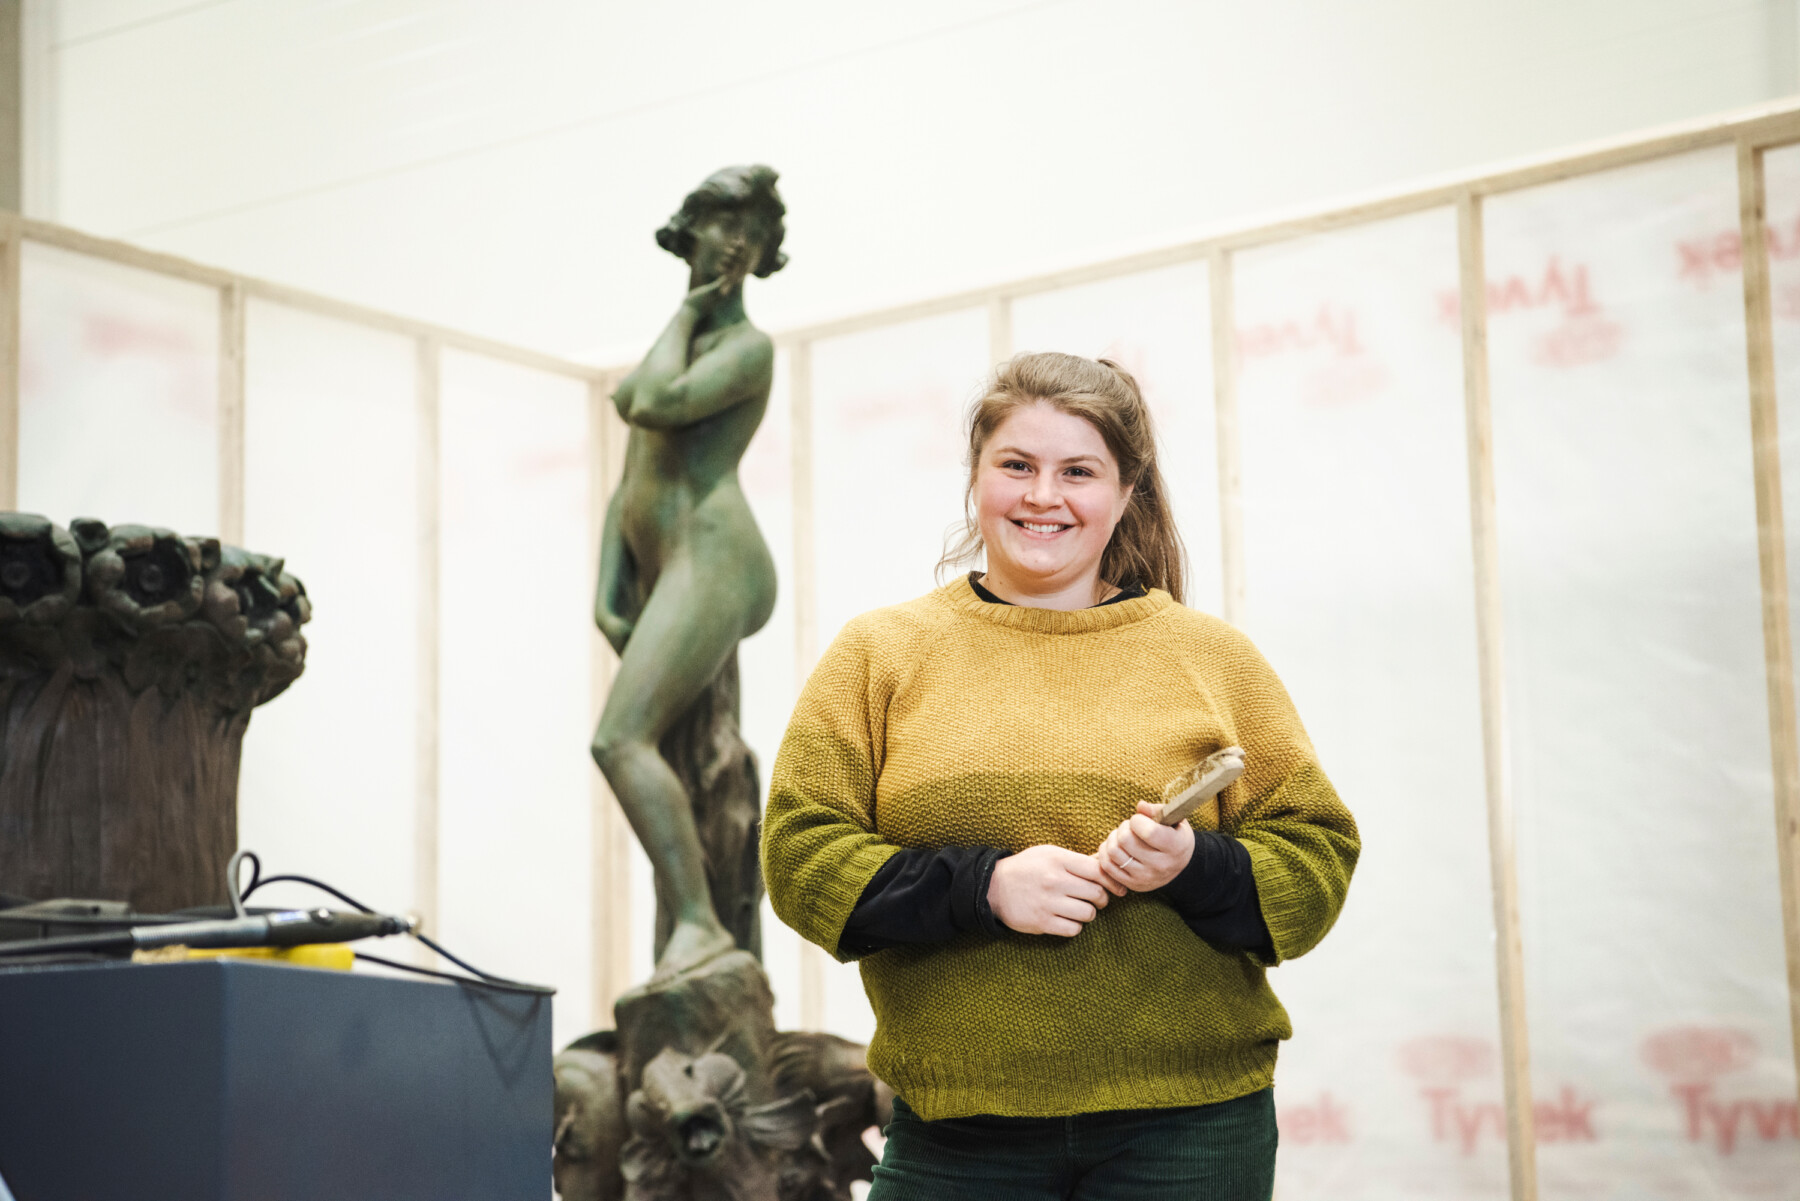 Una mujer con un pincel en las manos posa en un taller frente a la estatua de bronce de una figura femenina.